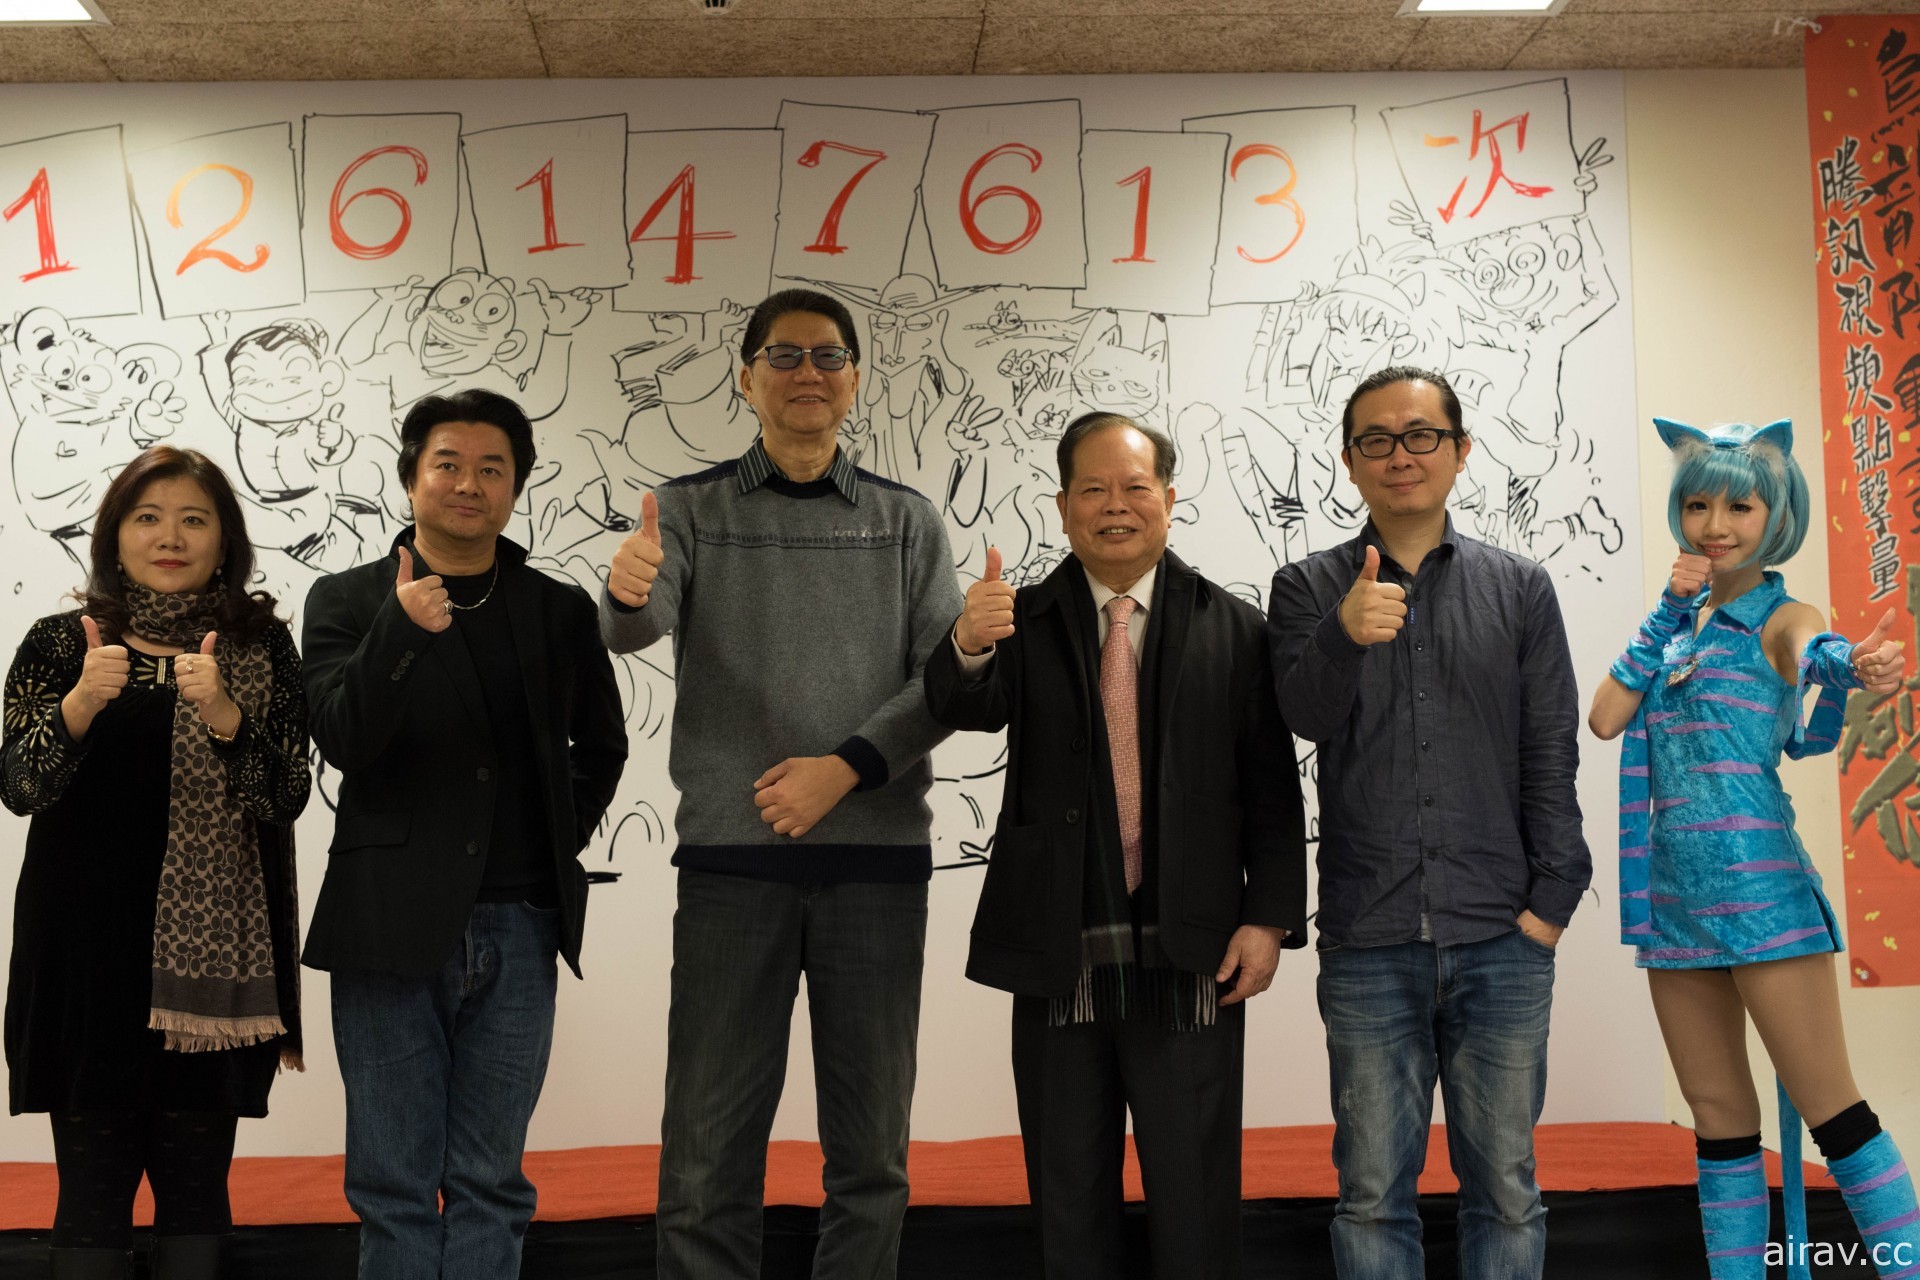 漫画家敖幼祥宣布成立“乌龙院动漫奖学金”每年提供百万奖金资助台湾动漫产业